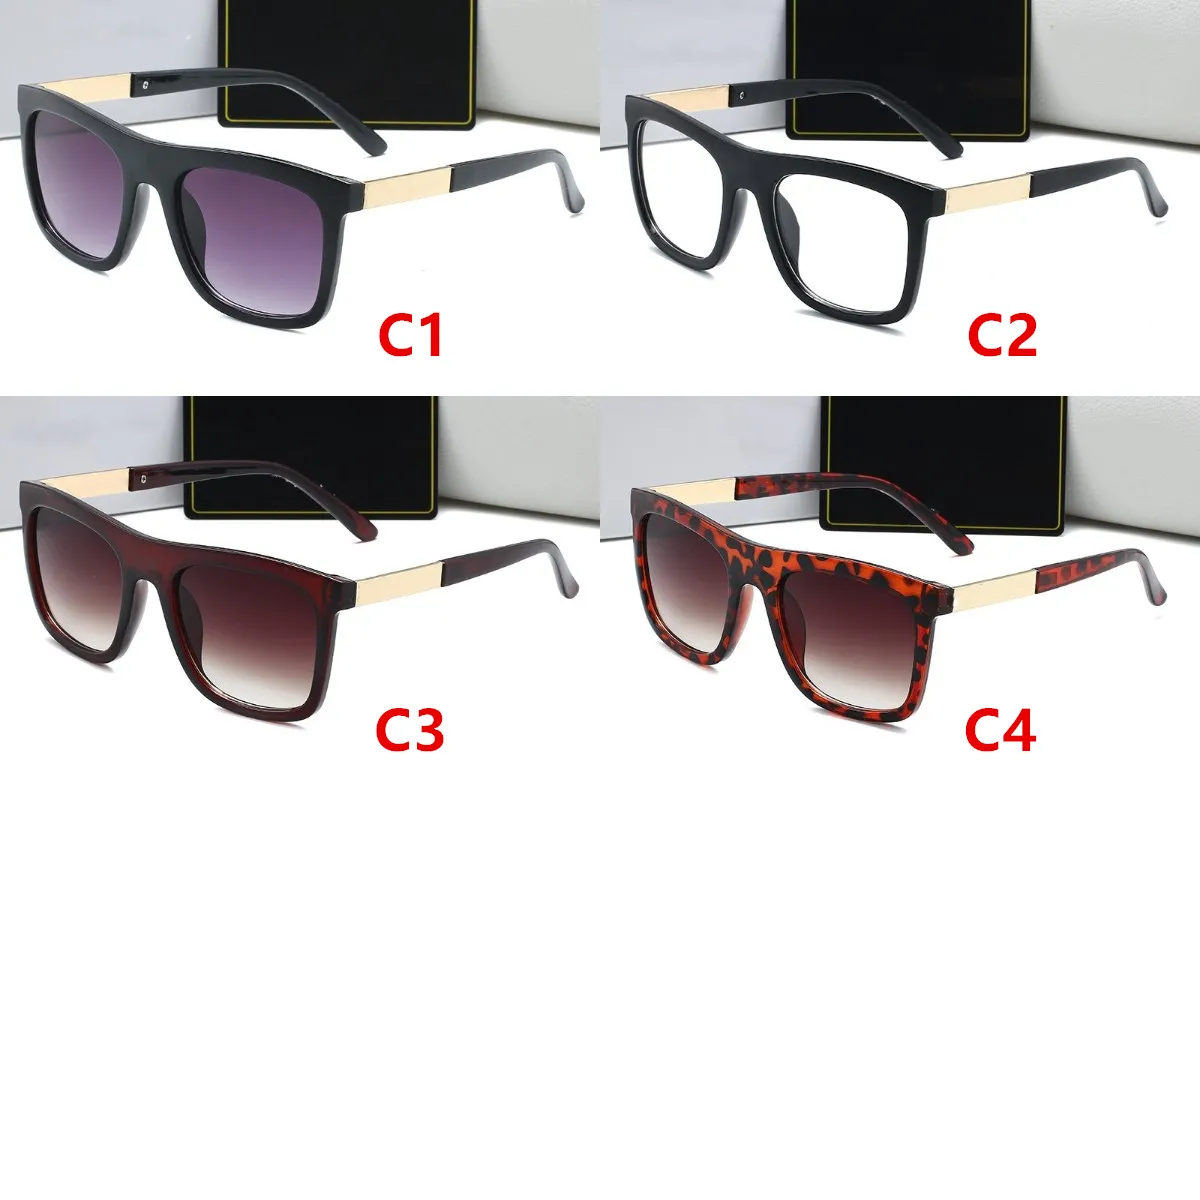 Мужские золотые металлические солнцезащитные очки, модные очки в квадратной оправе, Uv400, защитные летние очки с прозрачными линзами, 4 цвета ppfashionshop185V